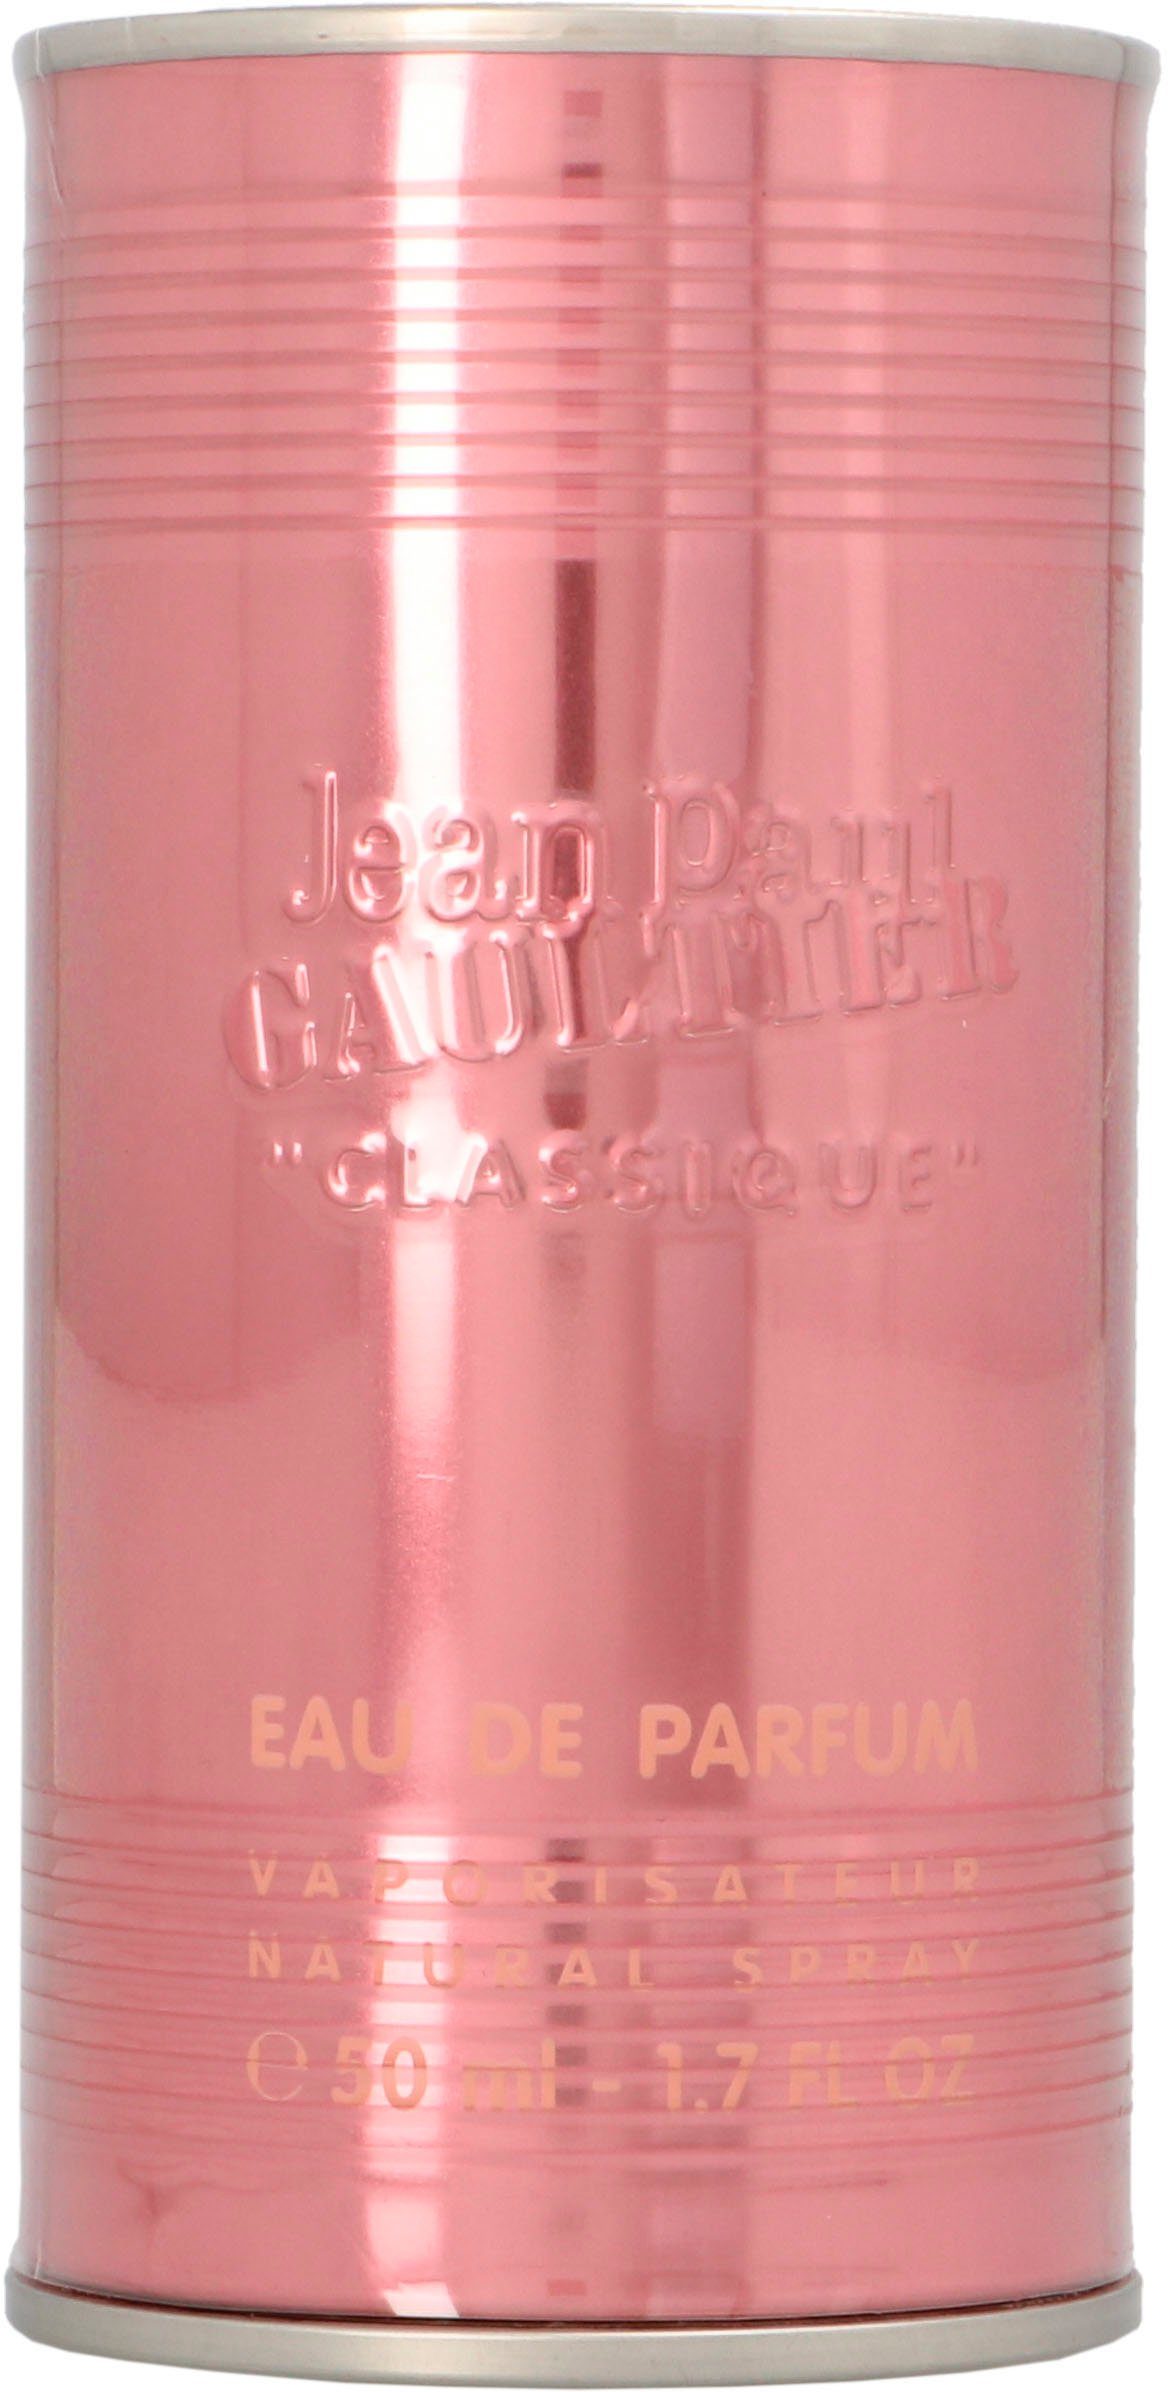 Classique de Parfum Eau PAUL GAULTIER JEAN